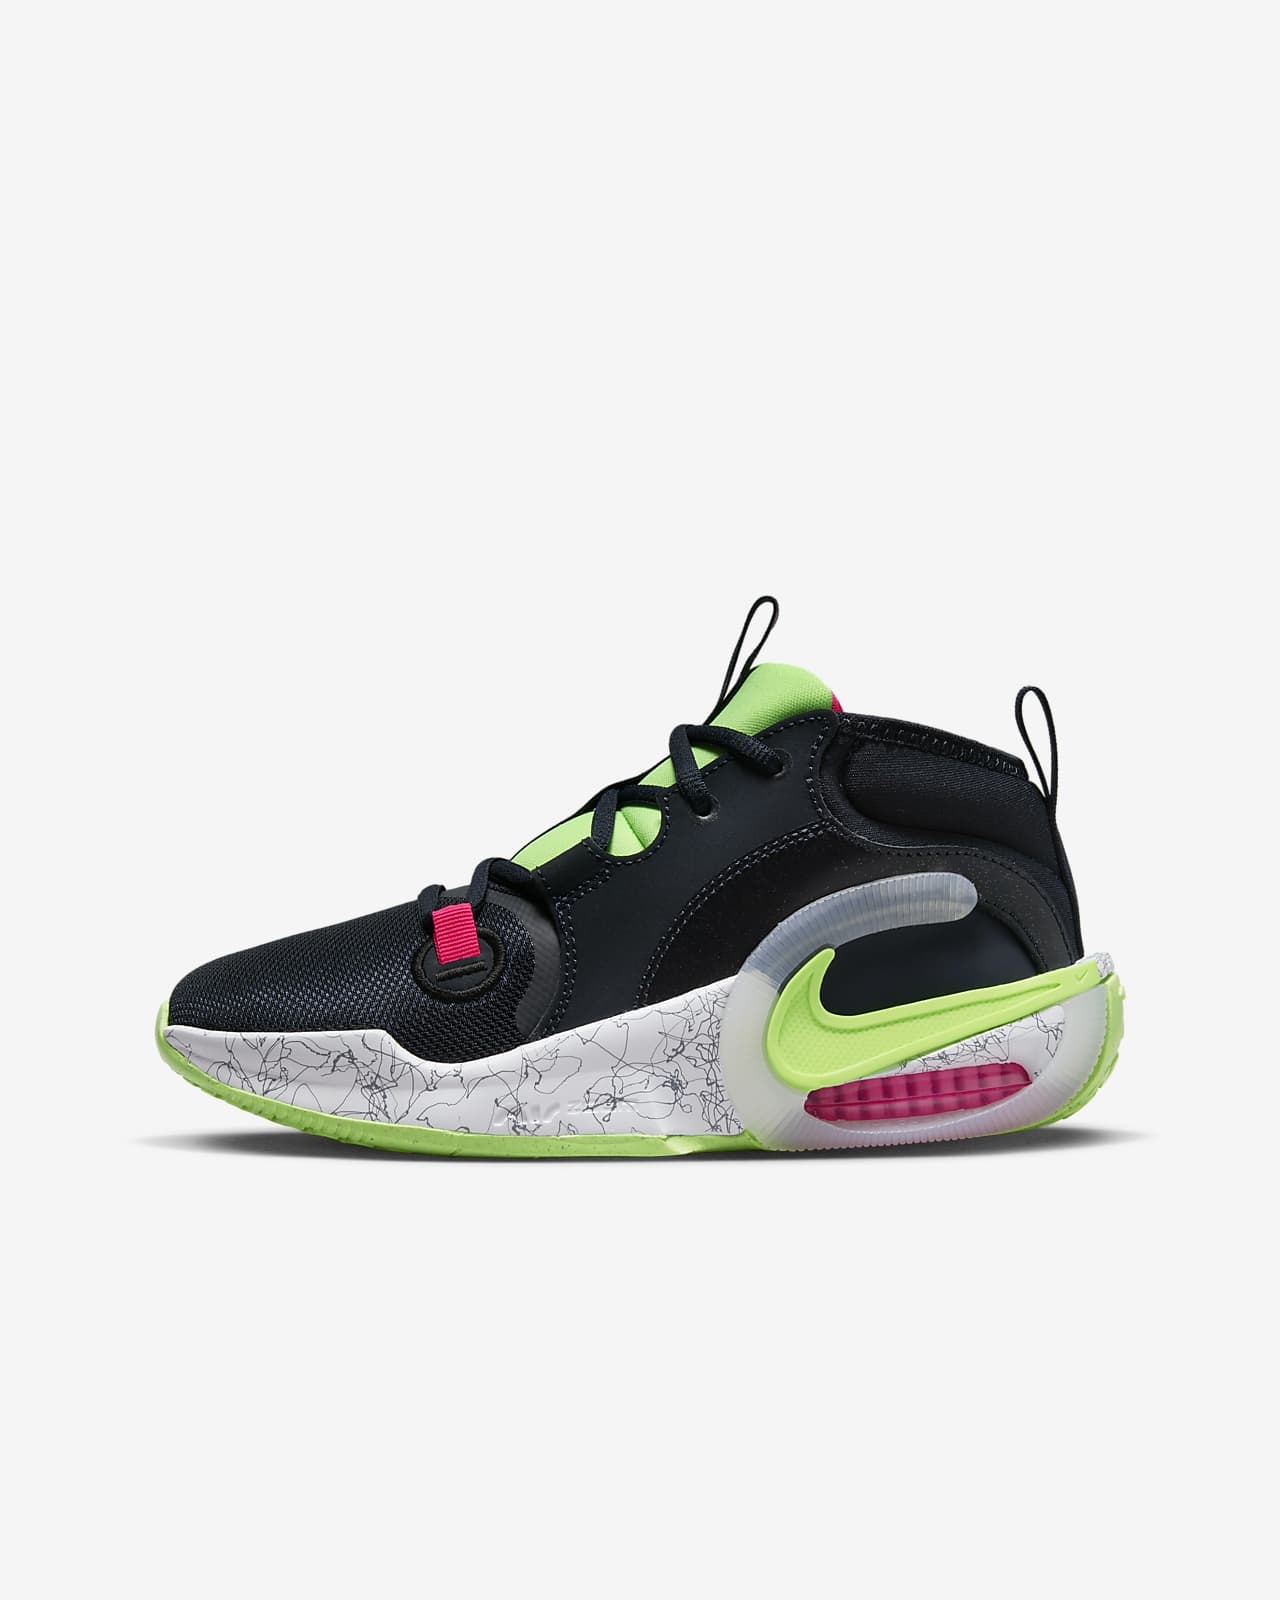 Nike Free Sports shoes Huarache, louis vuitton shoes for women, png